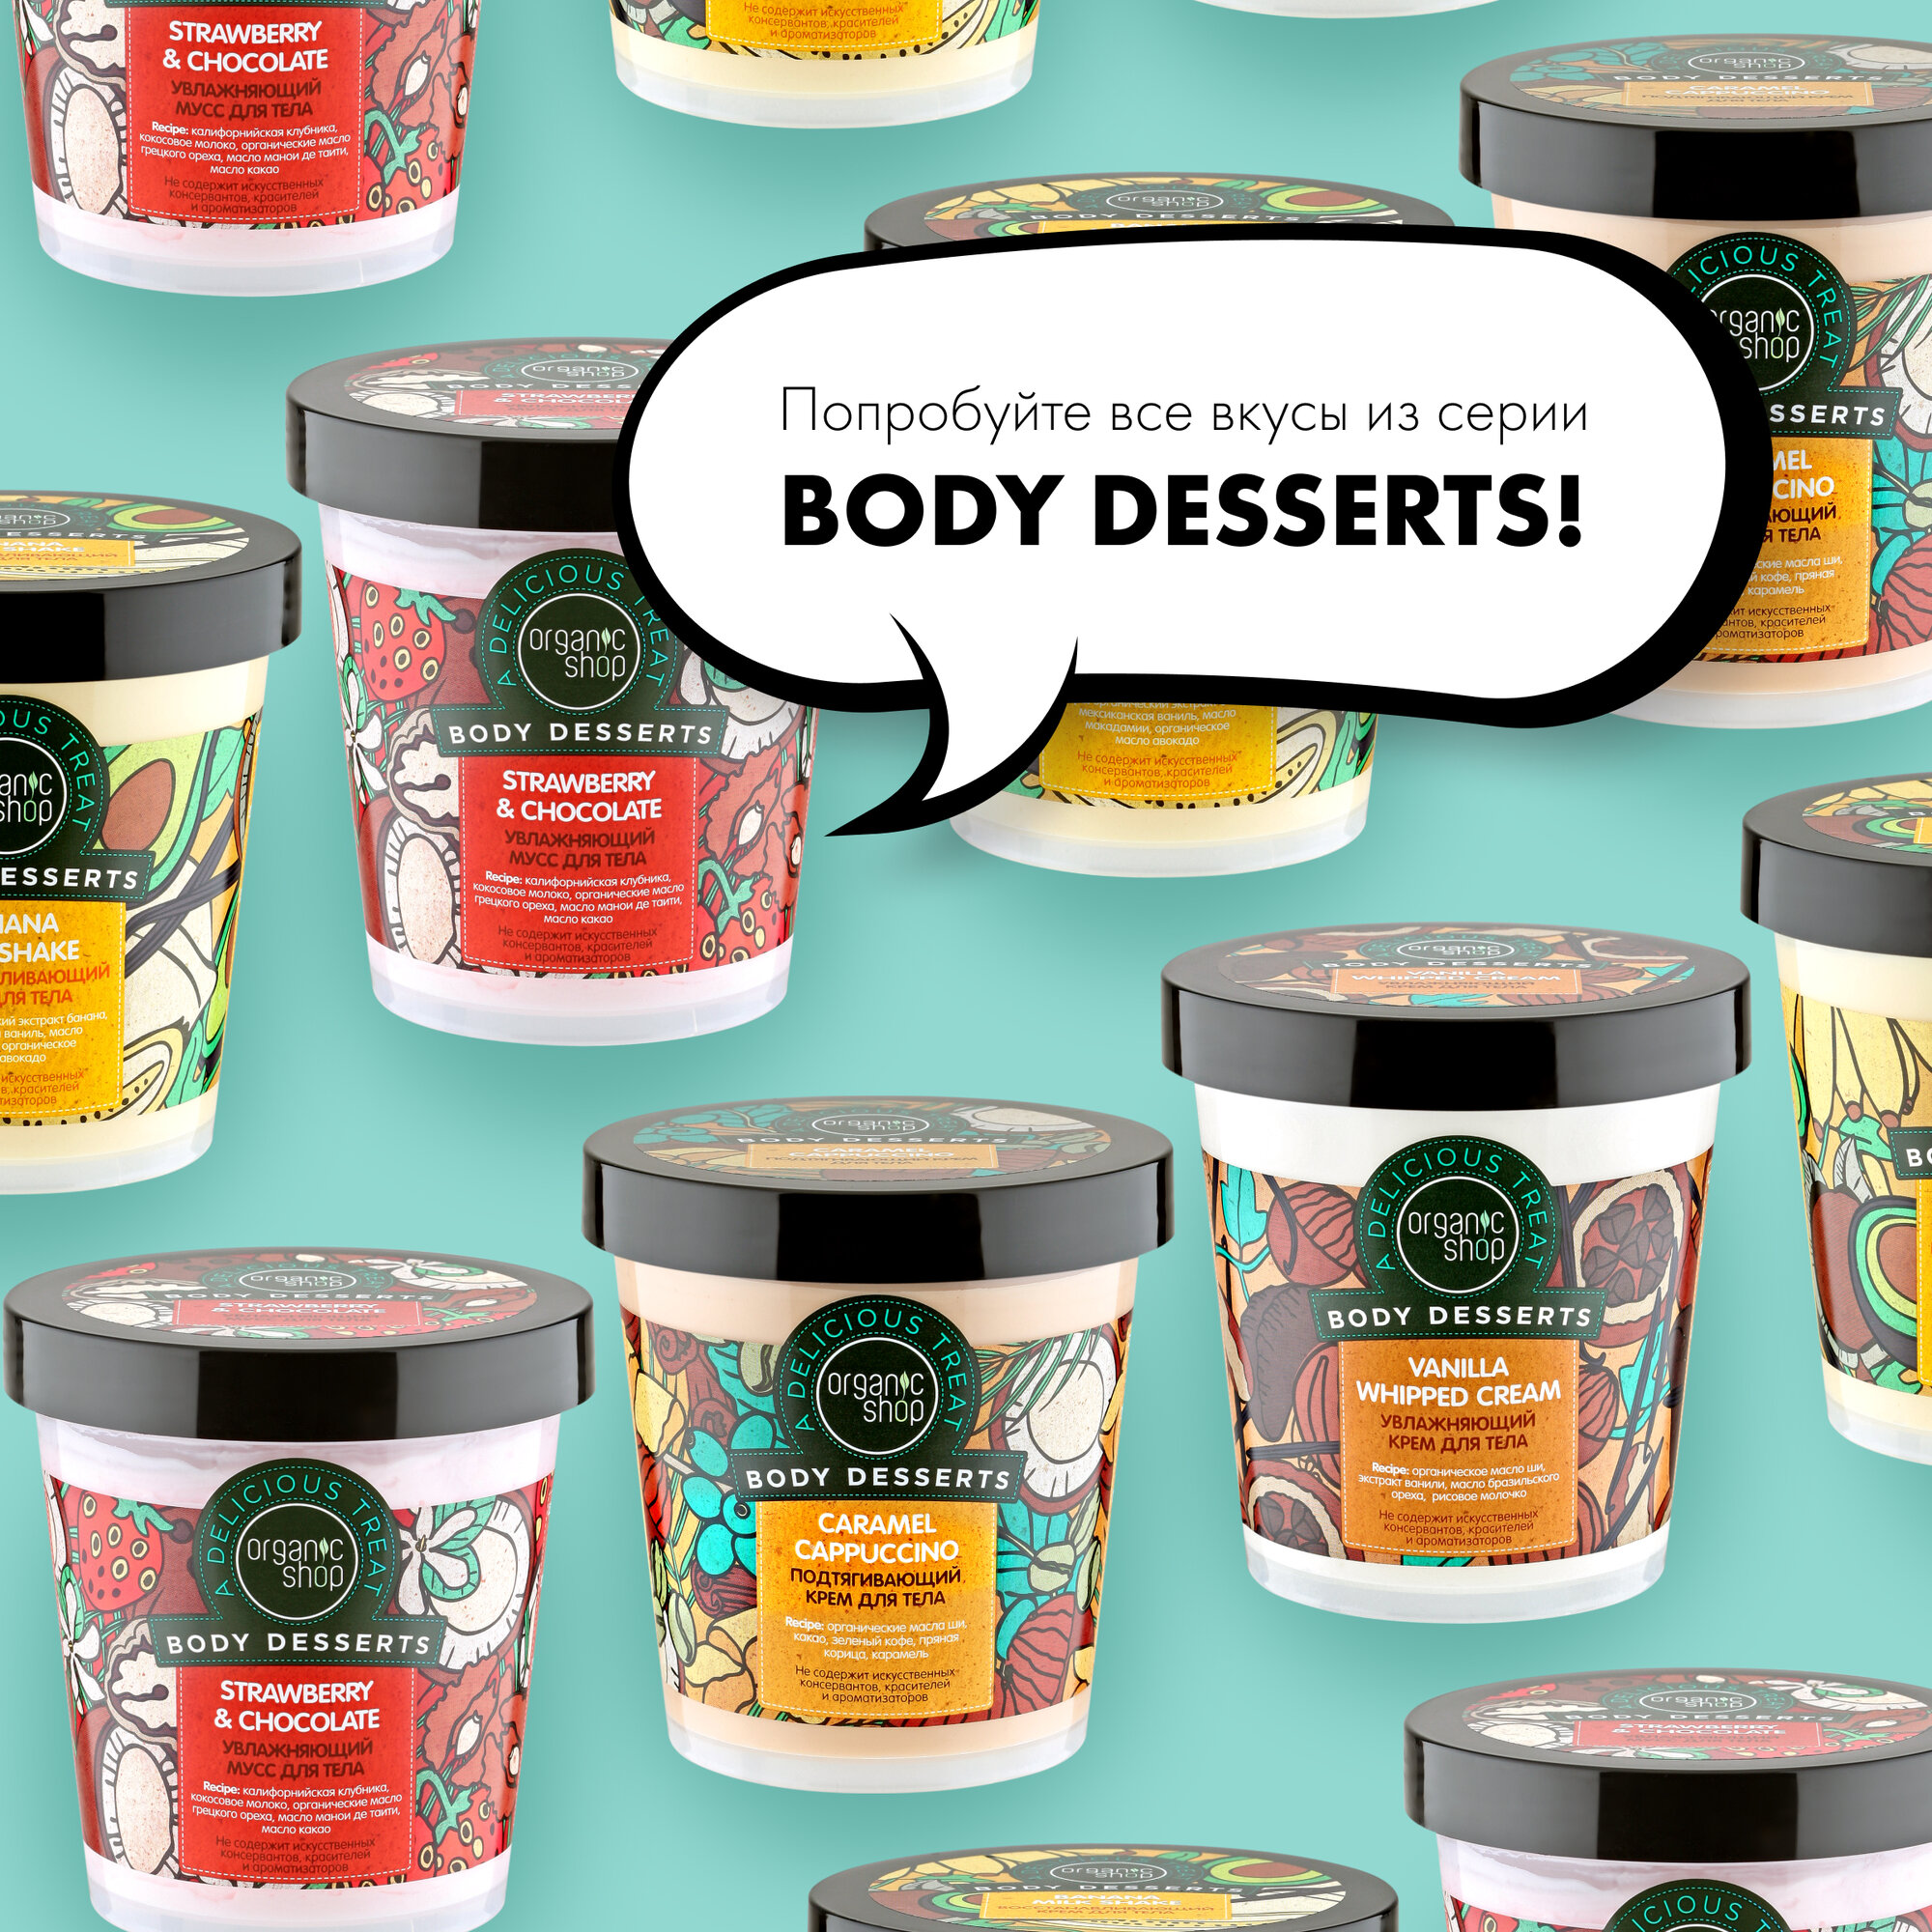 Крем для тела Organic Shop Body Desserts Vanilla увлажняющий питательный с маслом ши, 450 мл